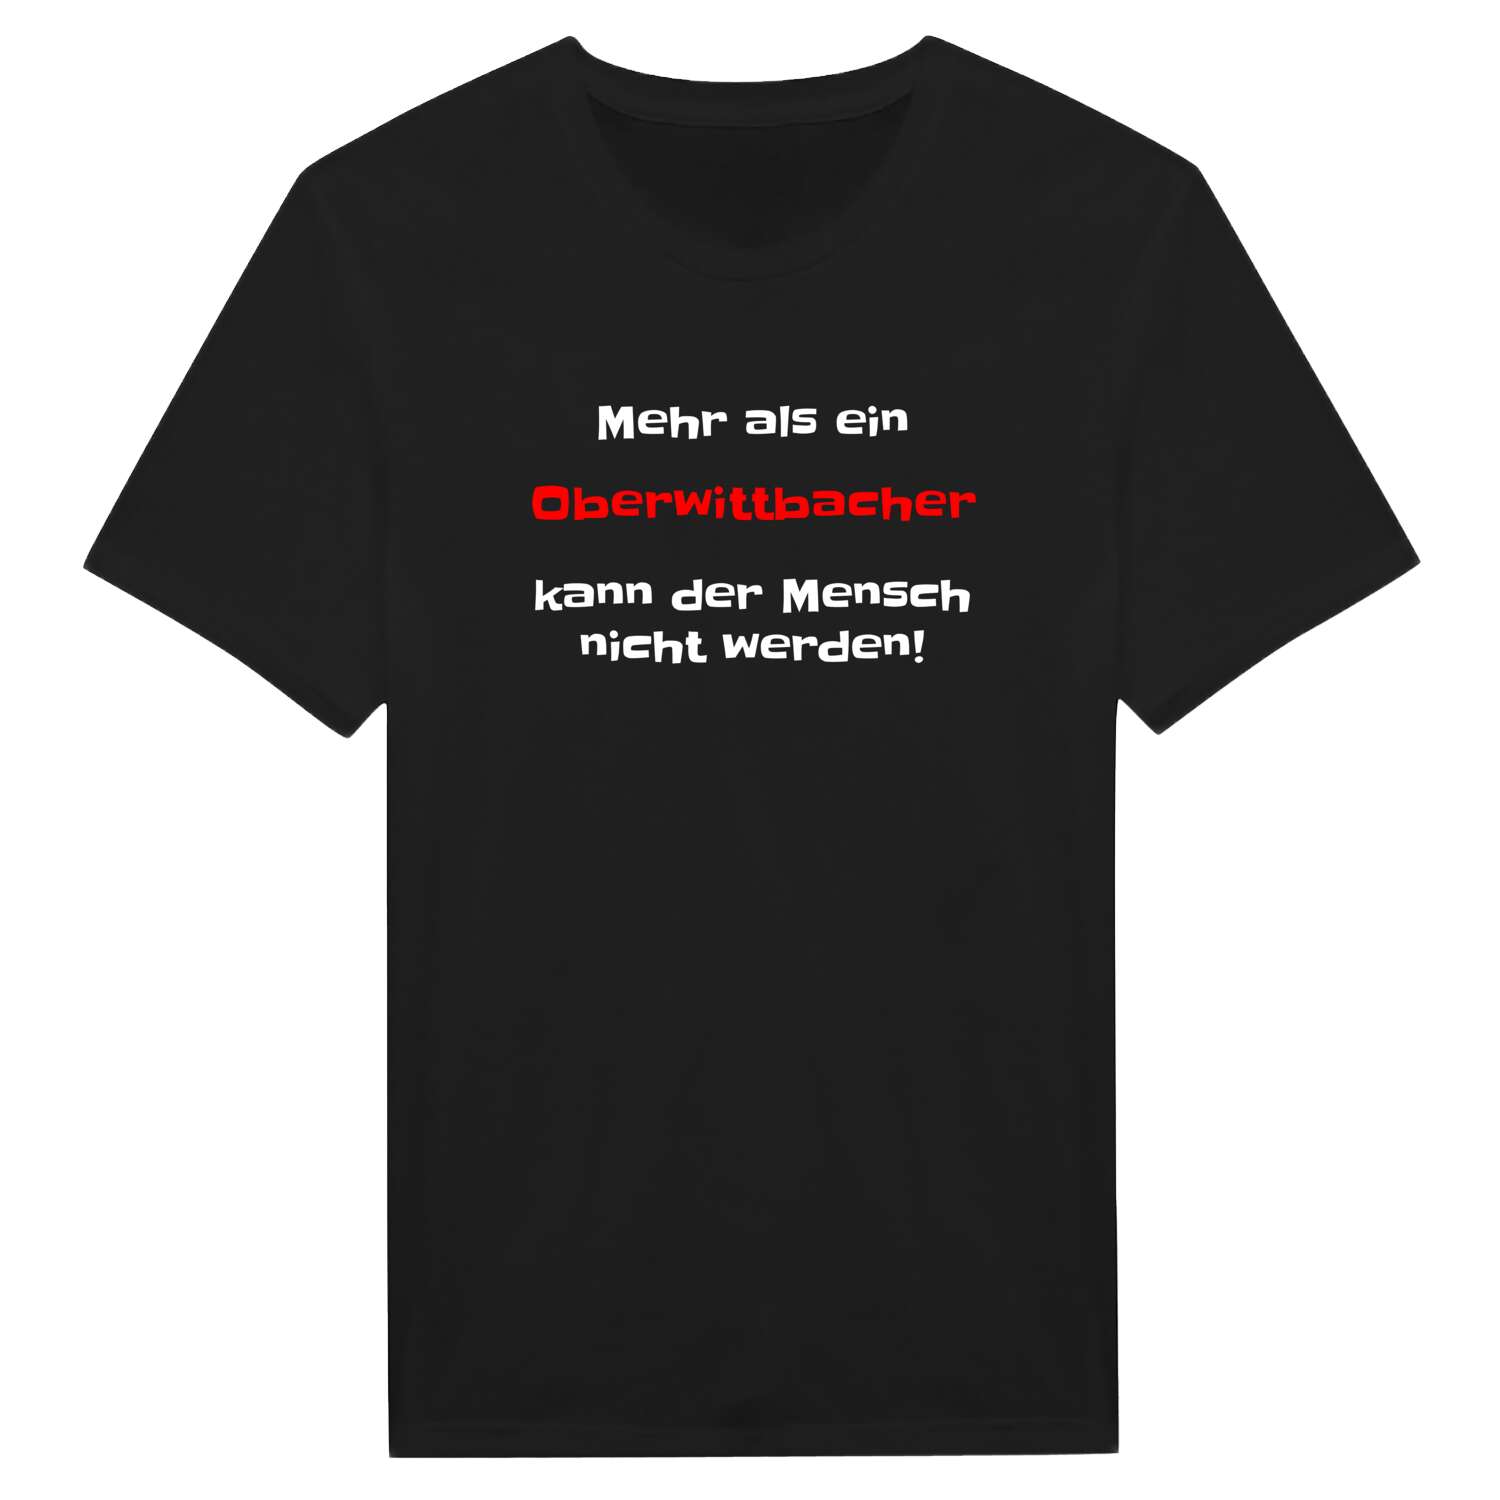 Oberwittbach T-Shirt »Mehr als ein«